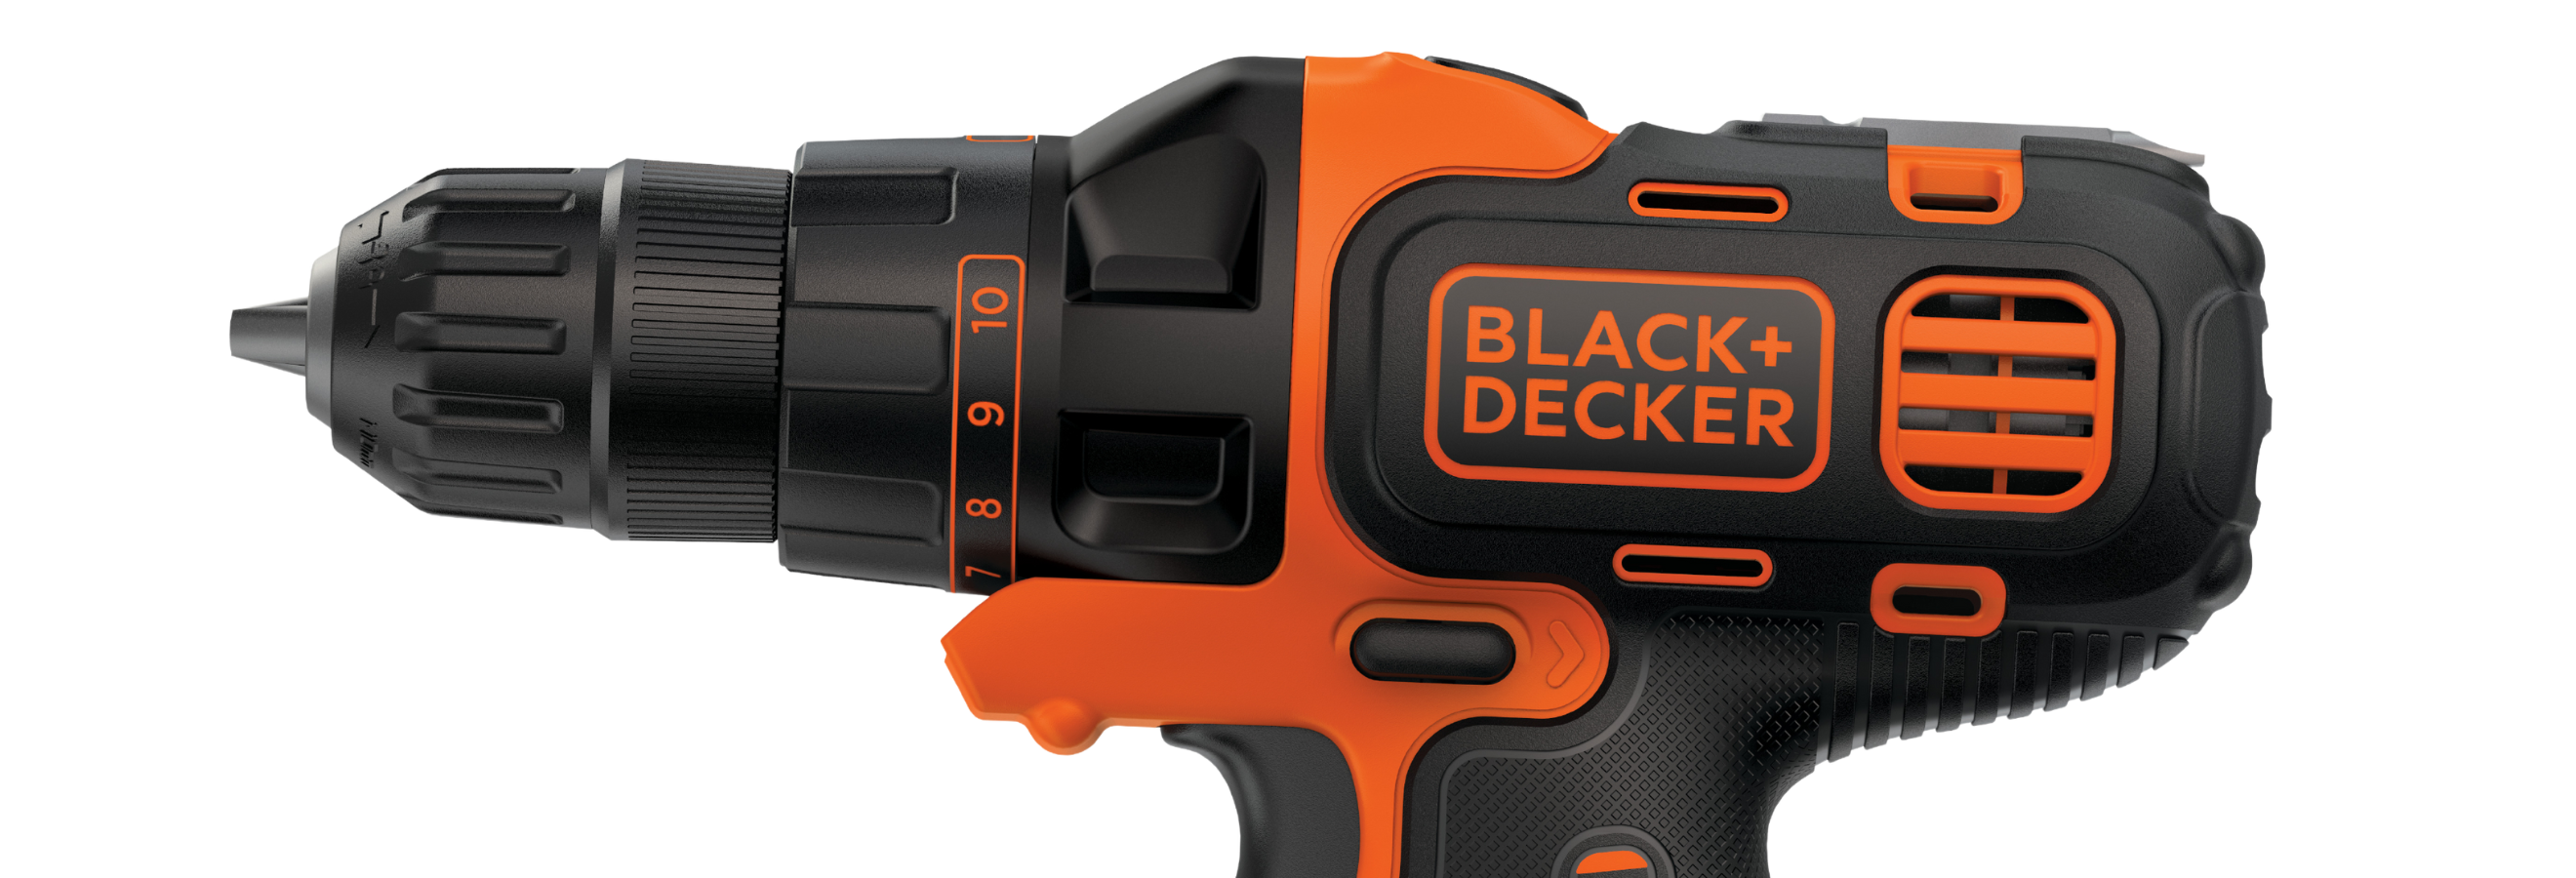 Black & Decker MATRIX(TM) 4 Amp Drill/Driver BDEDMT